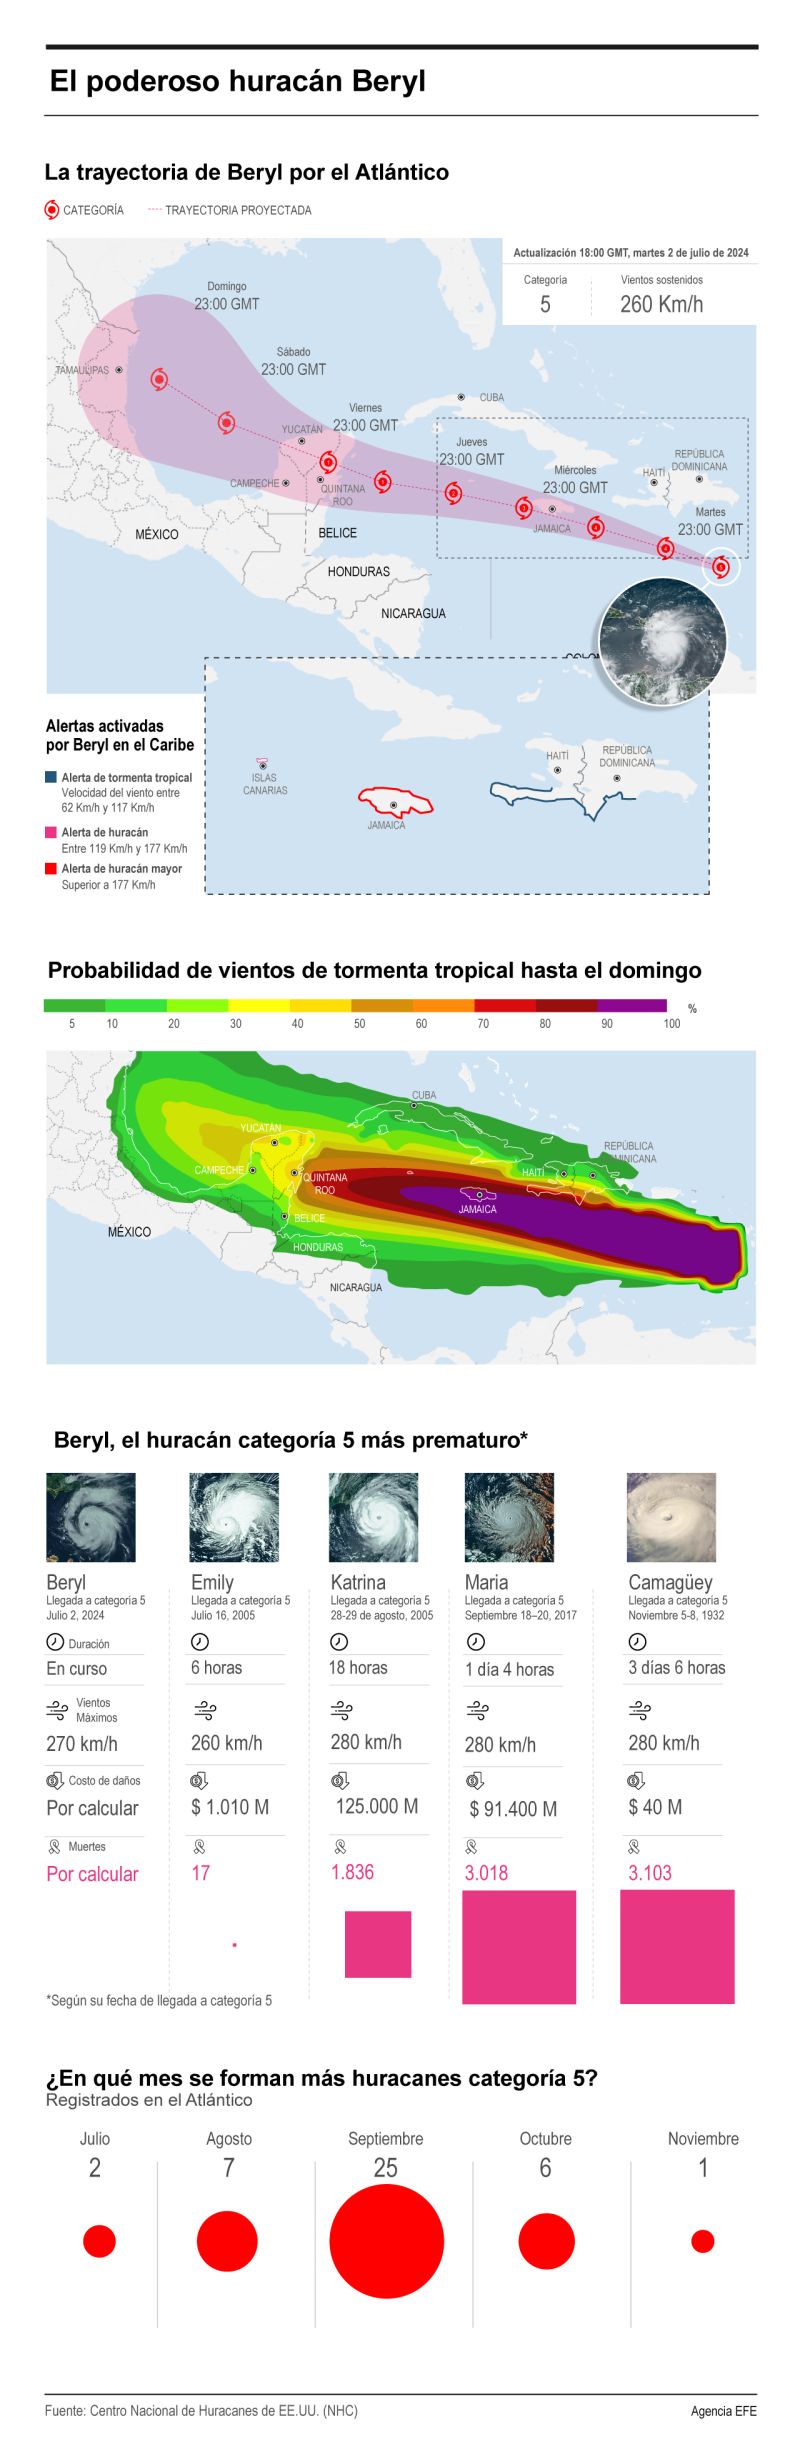 El poderoso huracán Beryl 01 030724